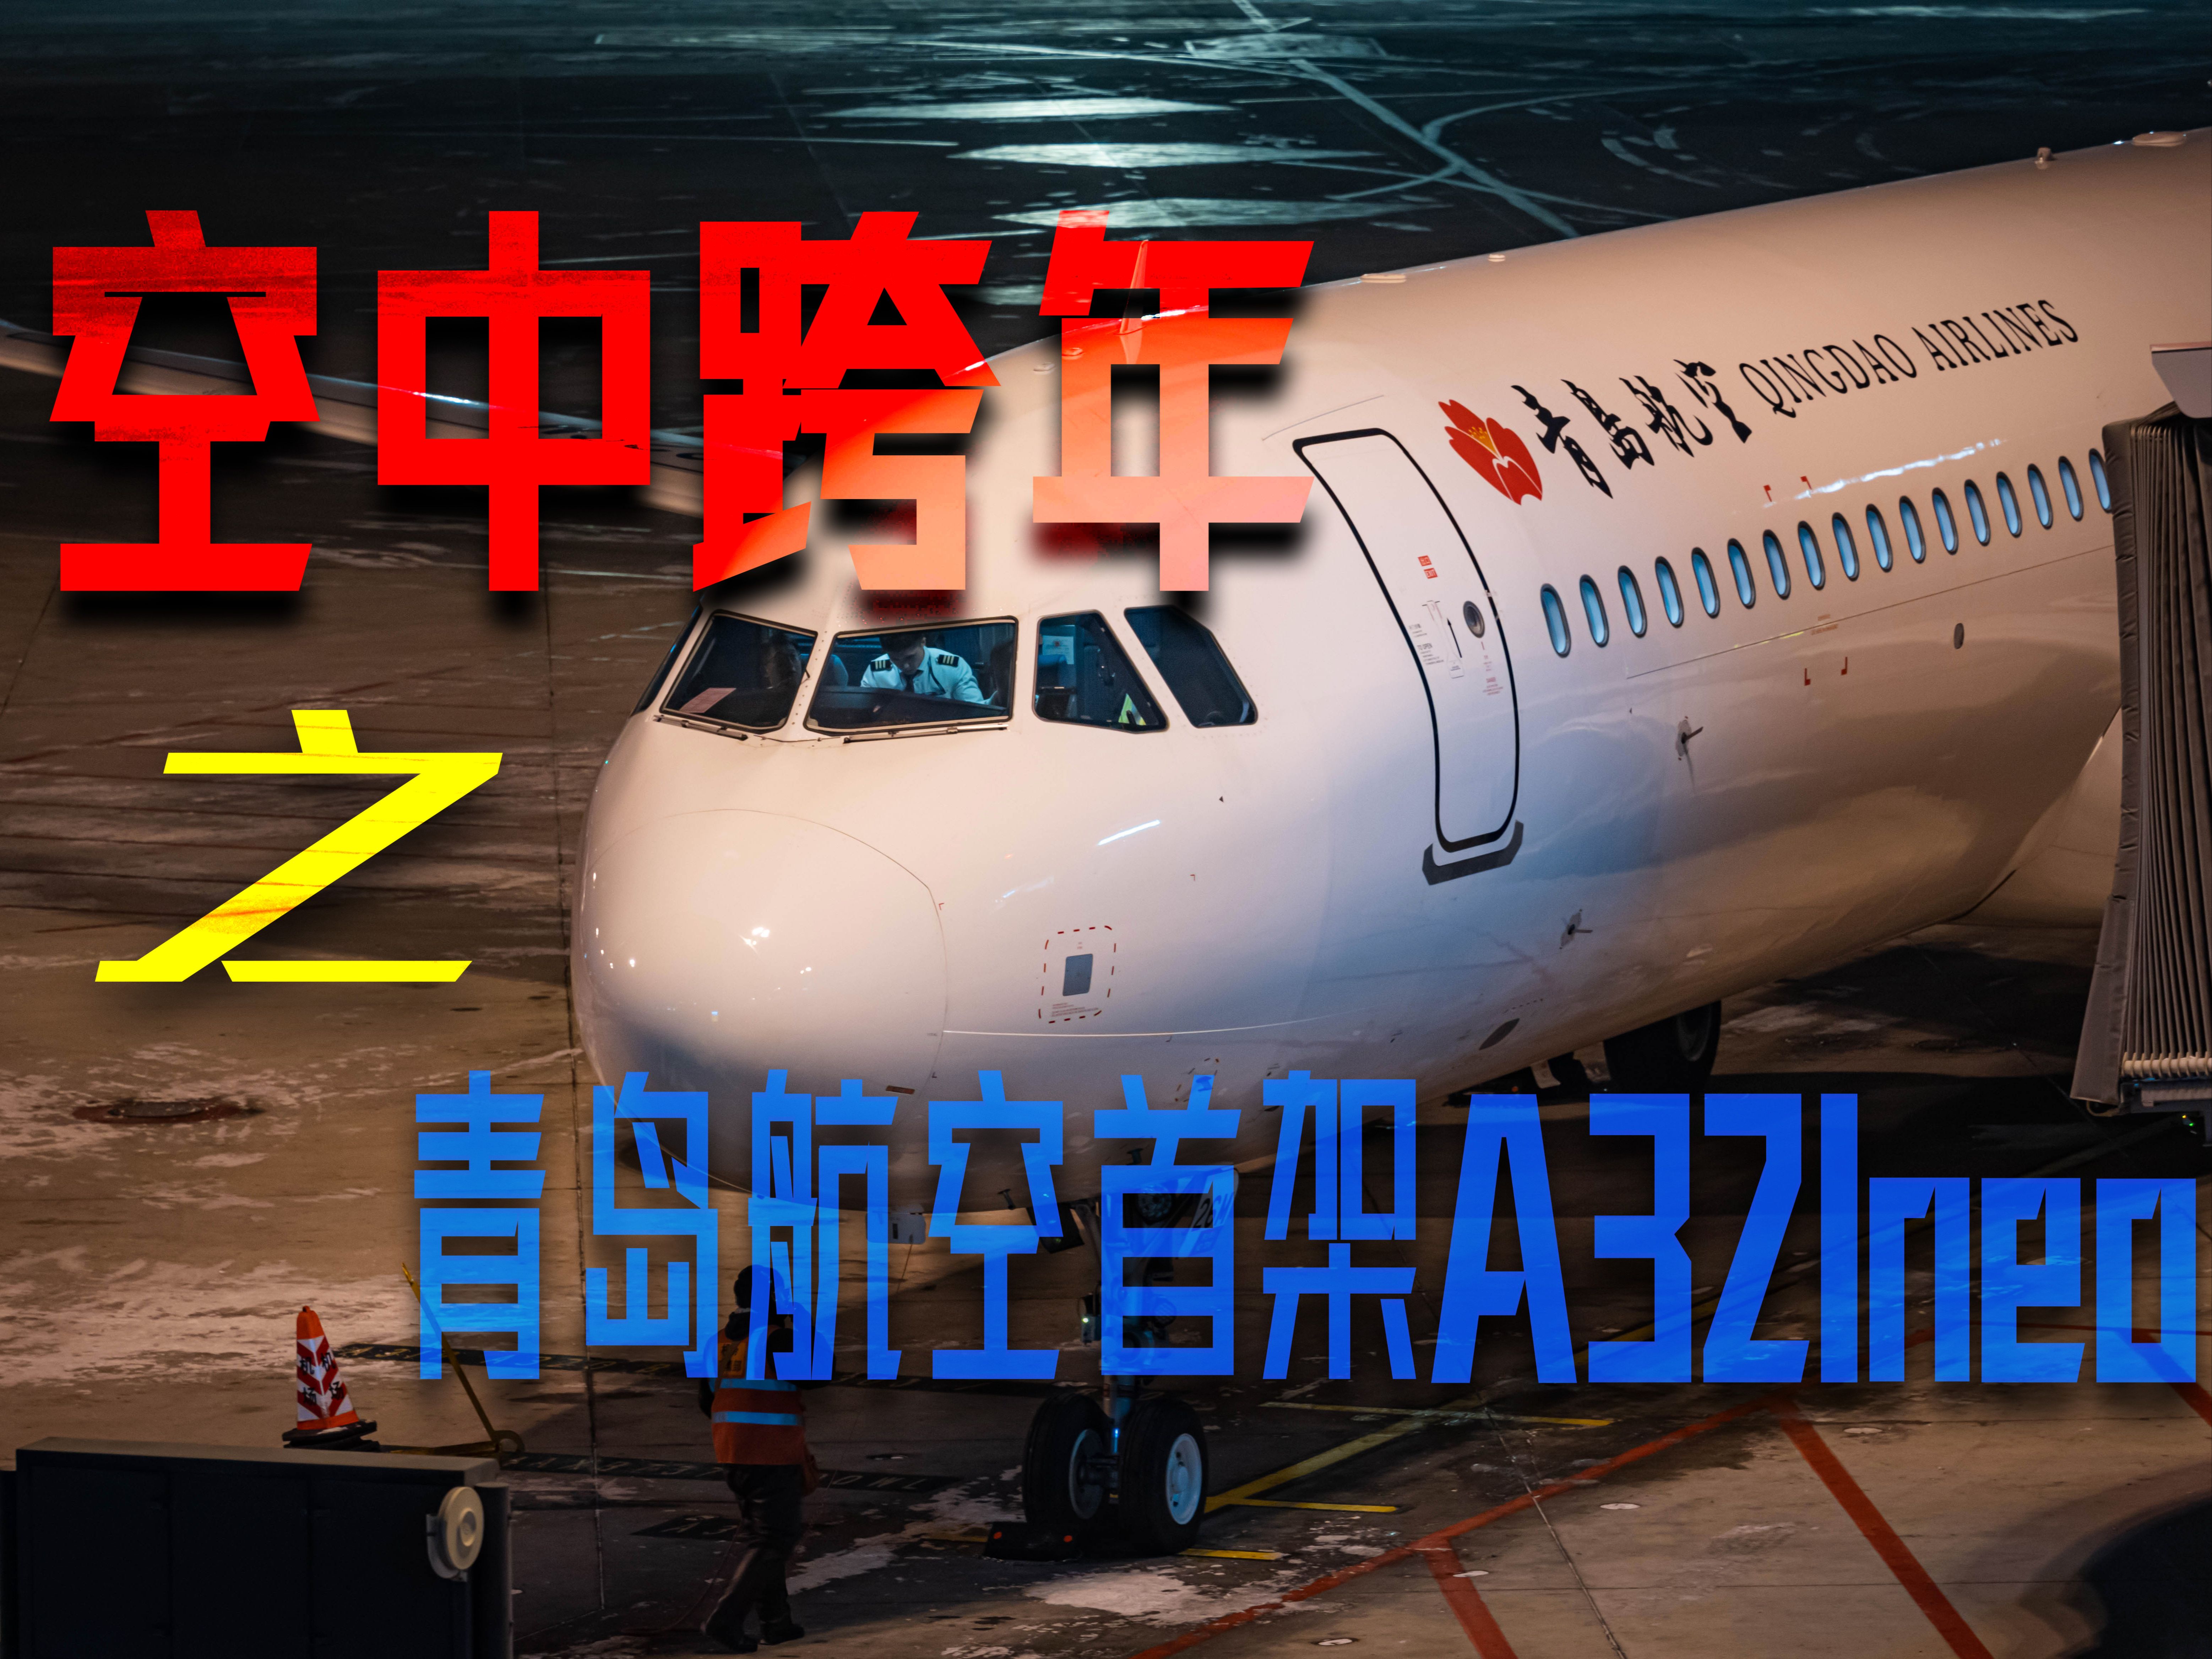 【航空】在万米高空的青岛航空首架A321neo上跨年是什么感觉-QW9882哈尔滨太平→青岛胶东飞行体验-1965 